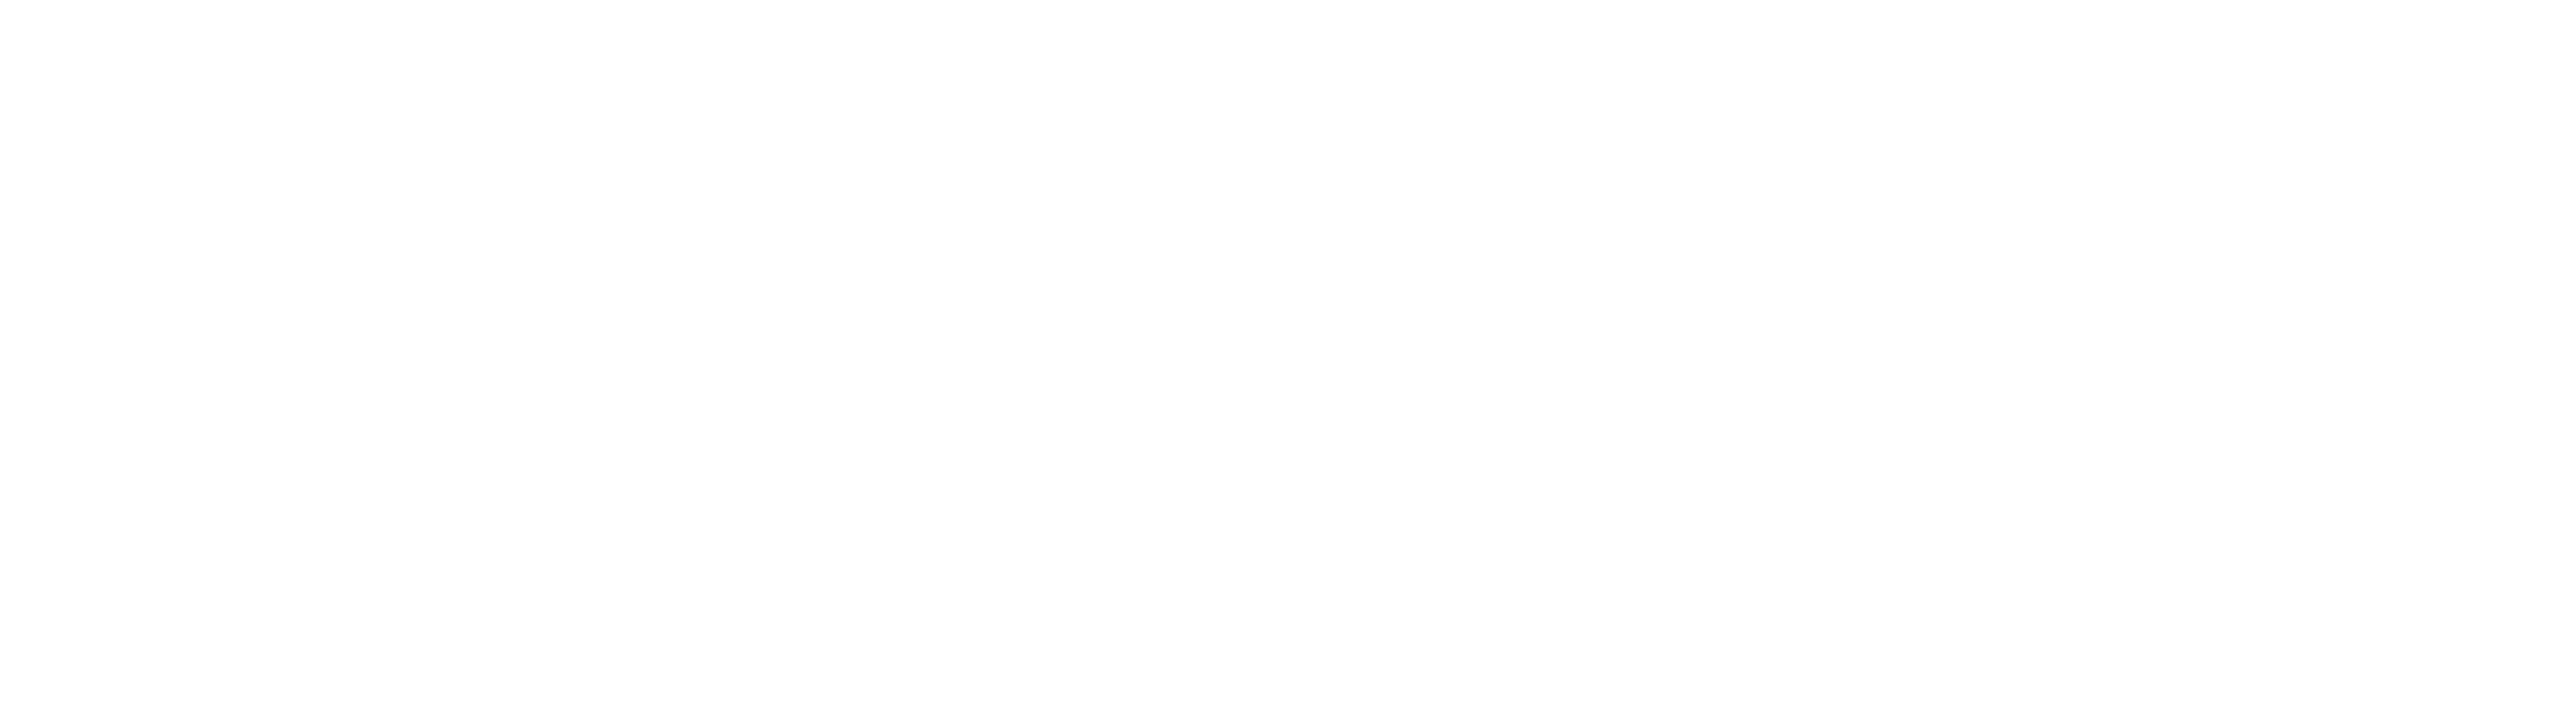 White Floral Decoration PNG Clip Art Image​